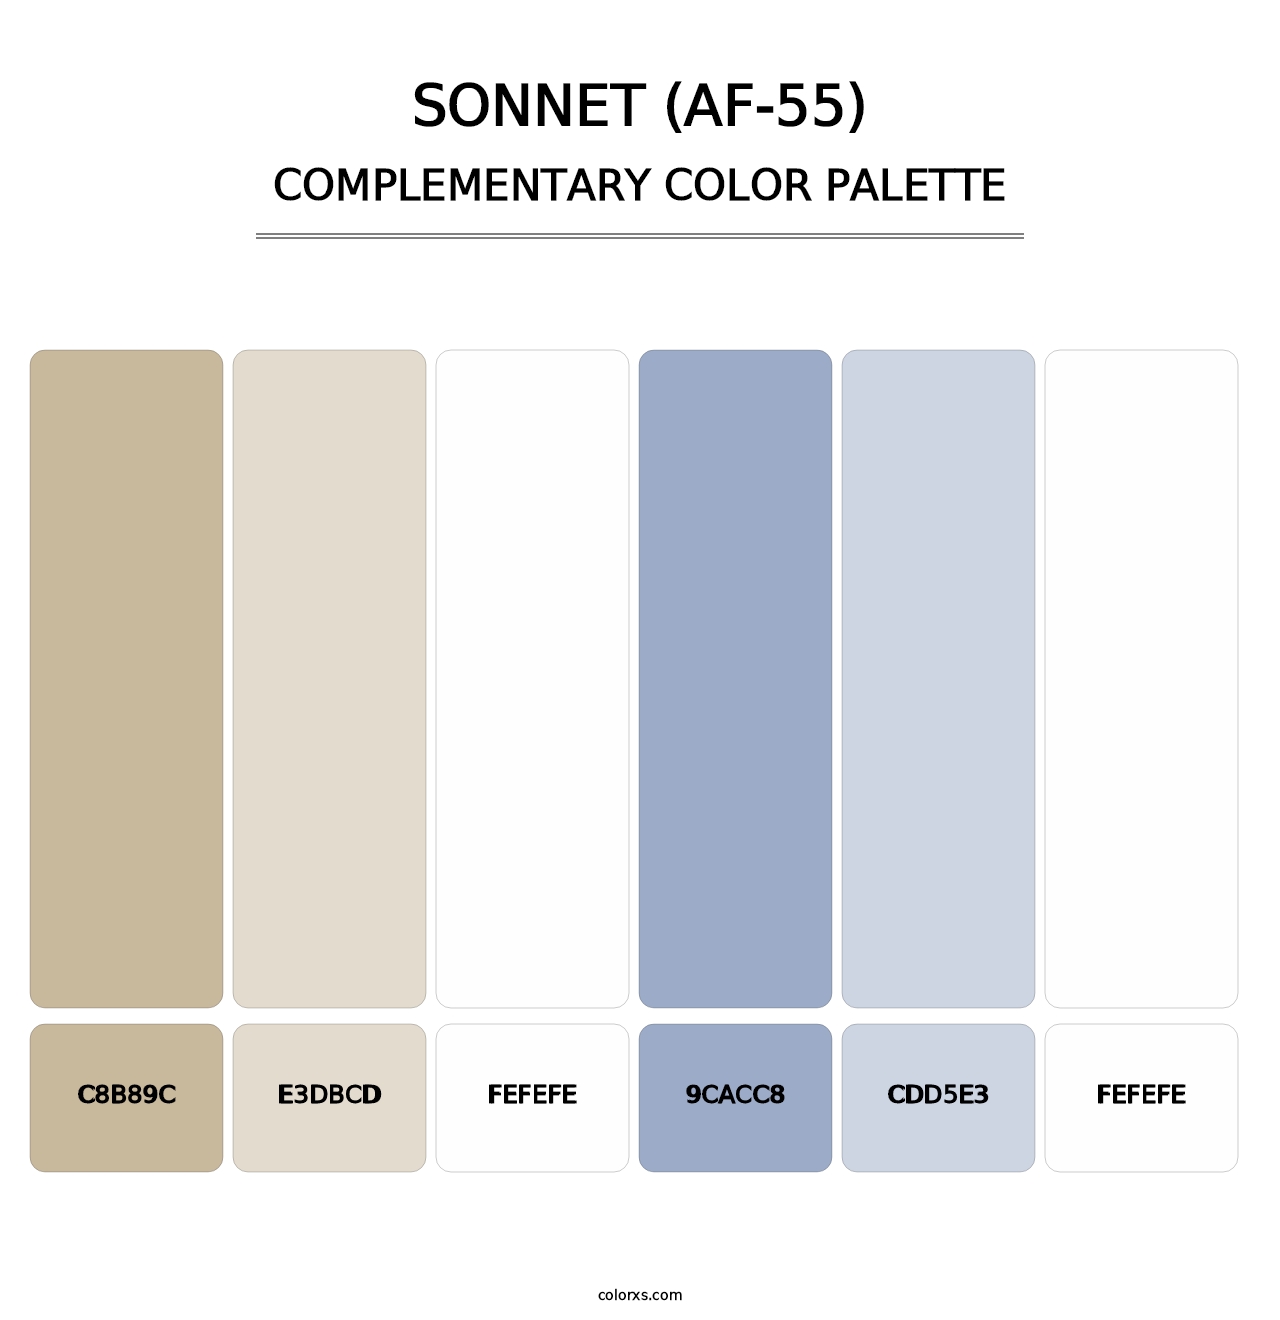 Sonnet (AF-55) - Complementary Color Palette